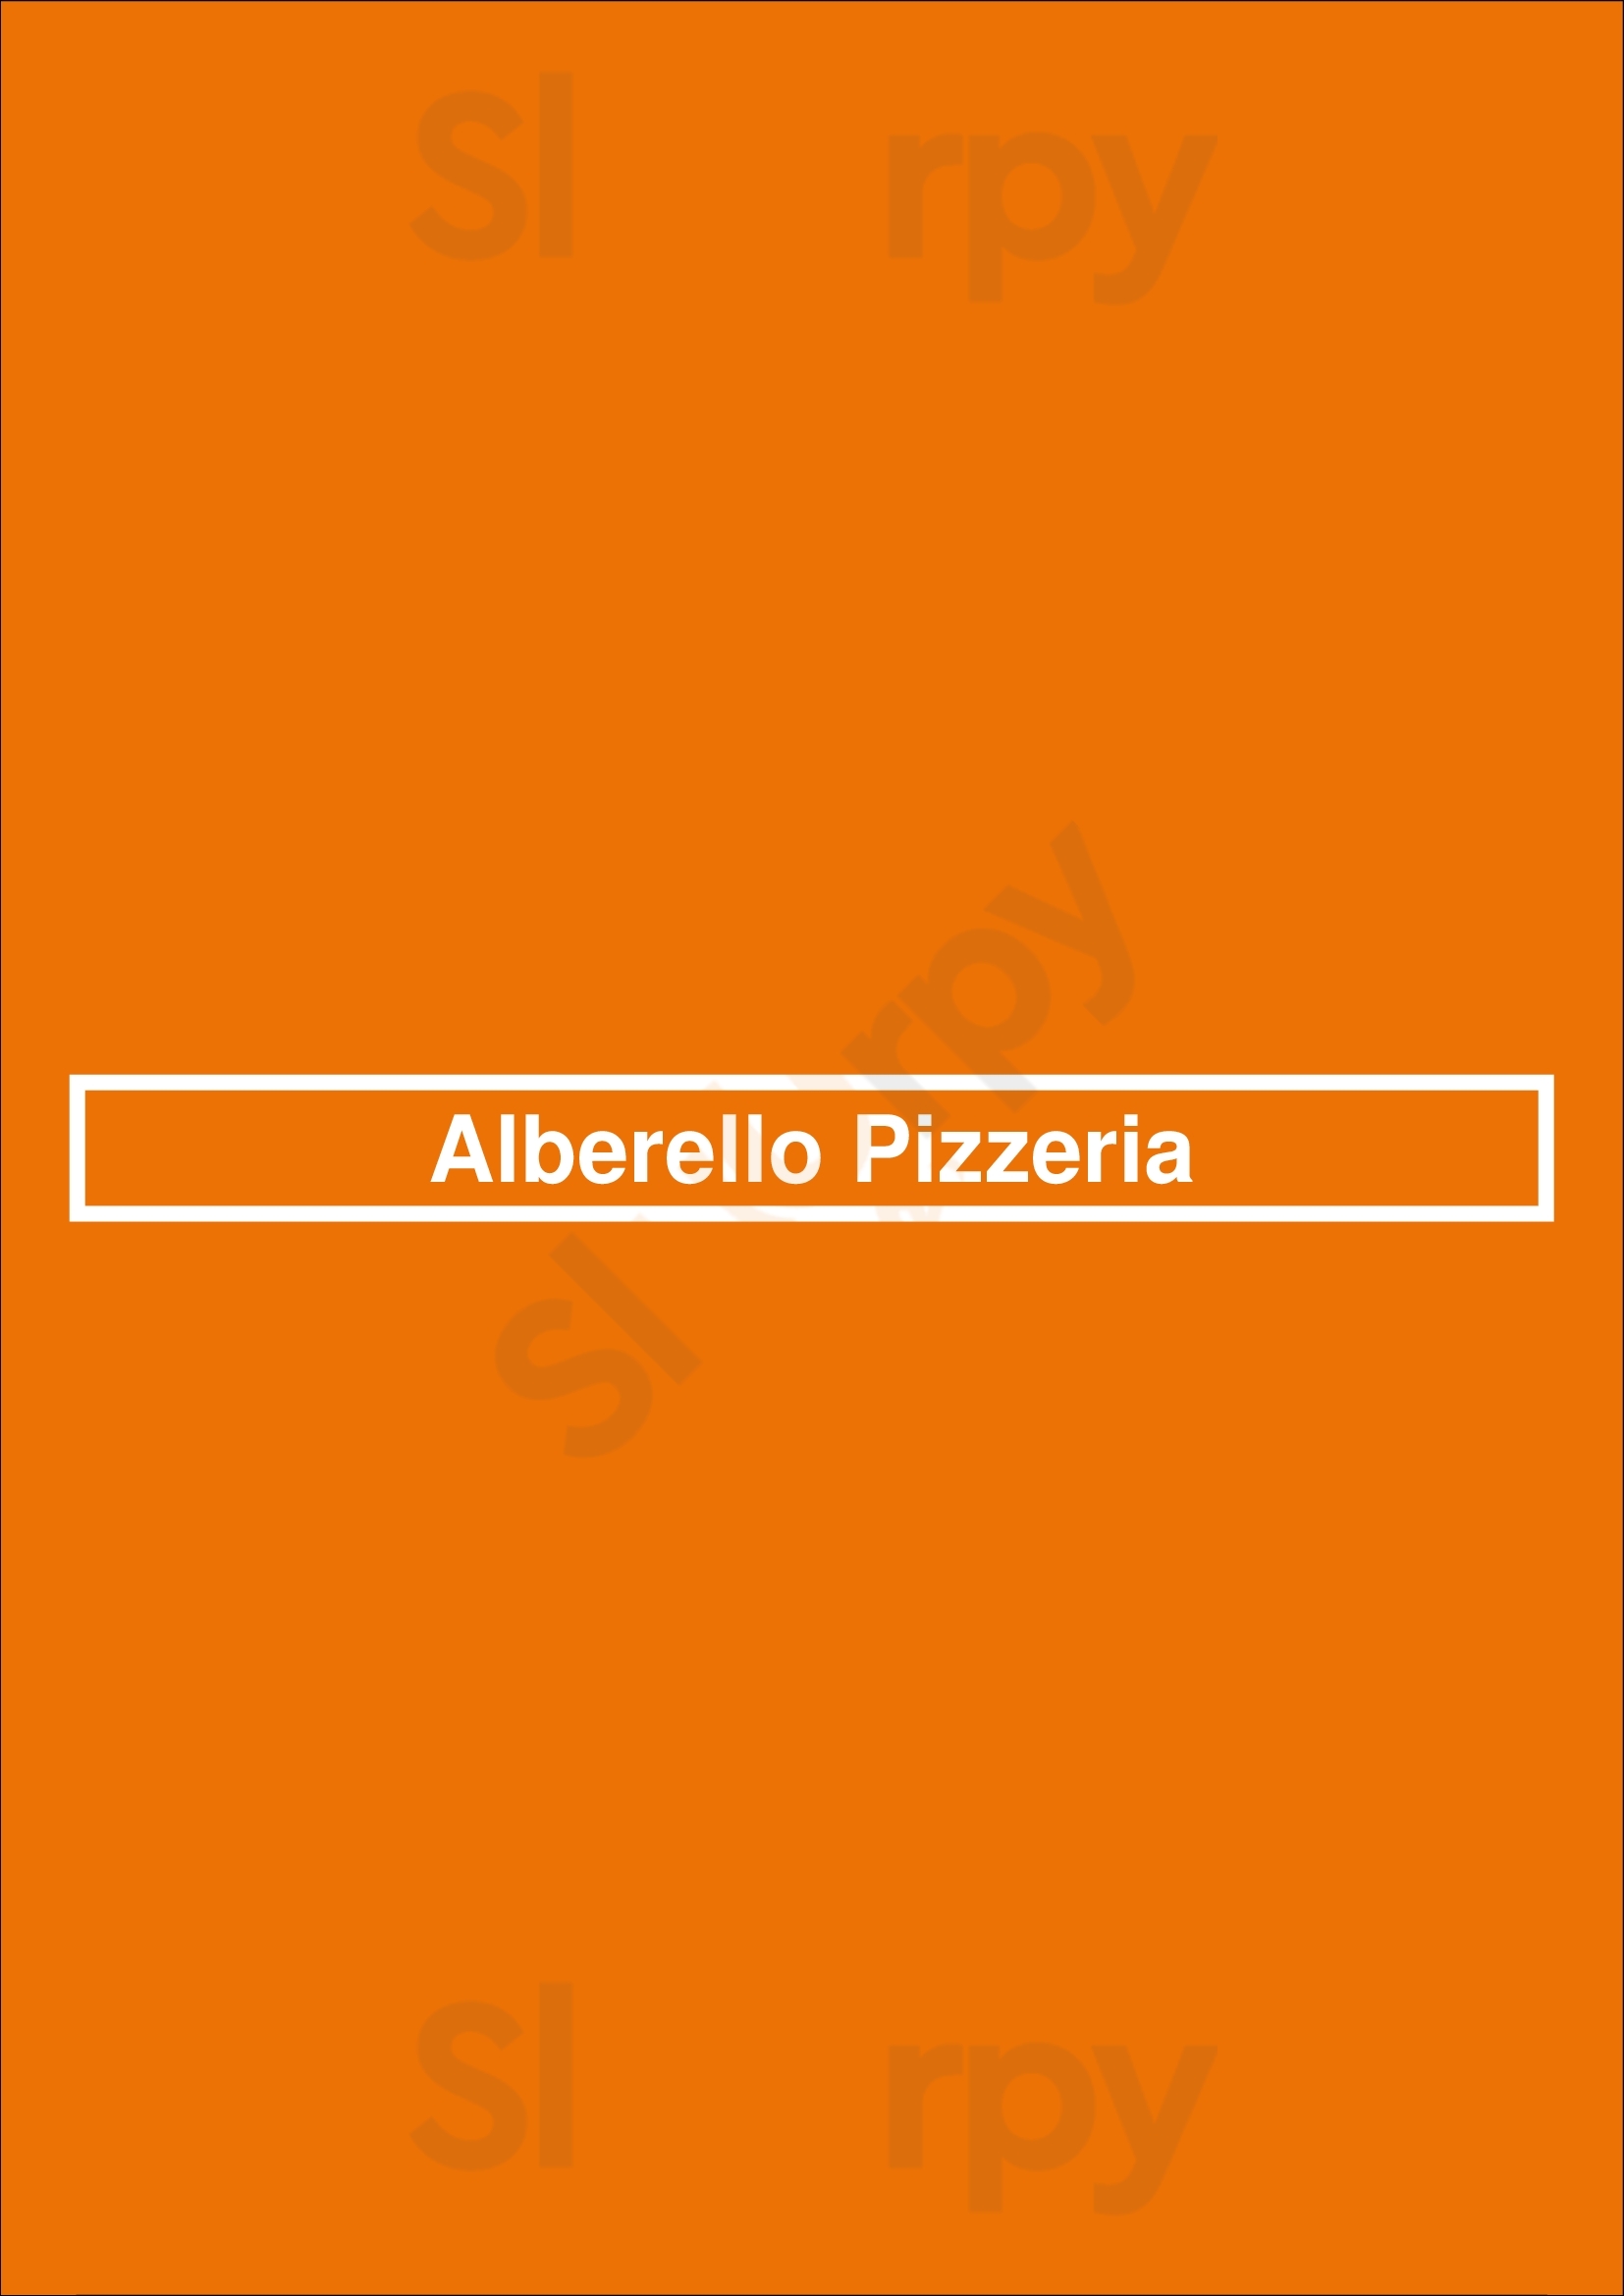 Alberello Pizzeria North Vancouver Menu - 1